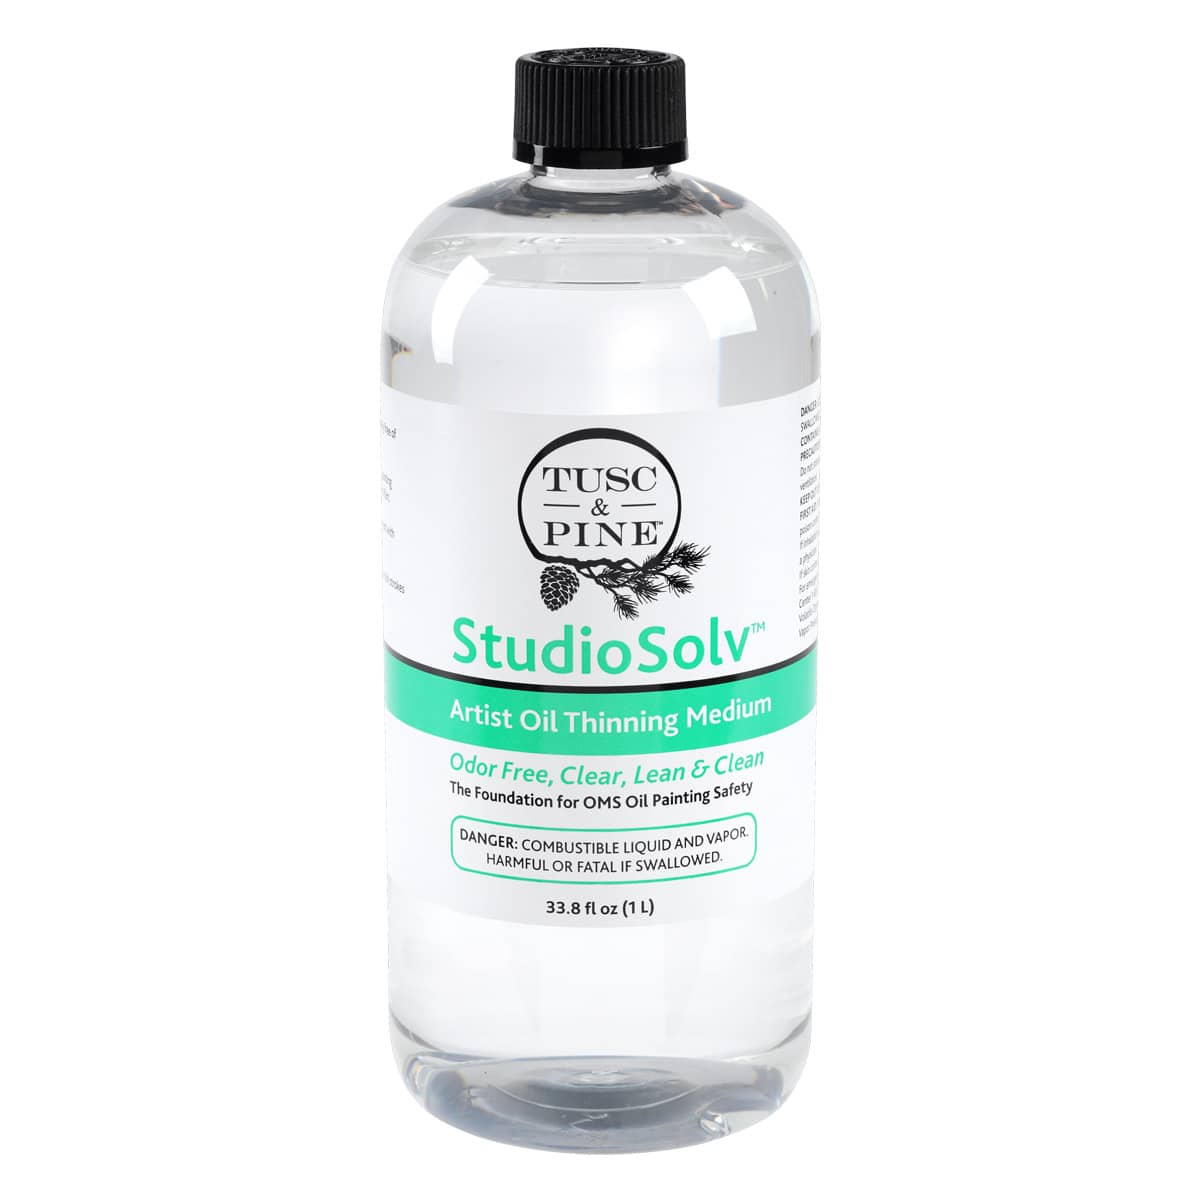 StudioSolv™ Artist Oil Thinning Medium, 33.8oz bottle